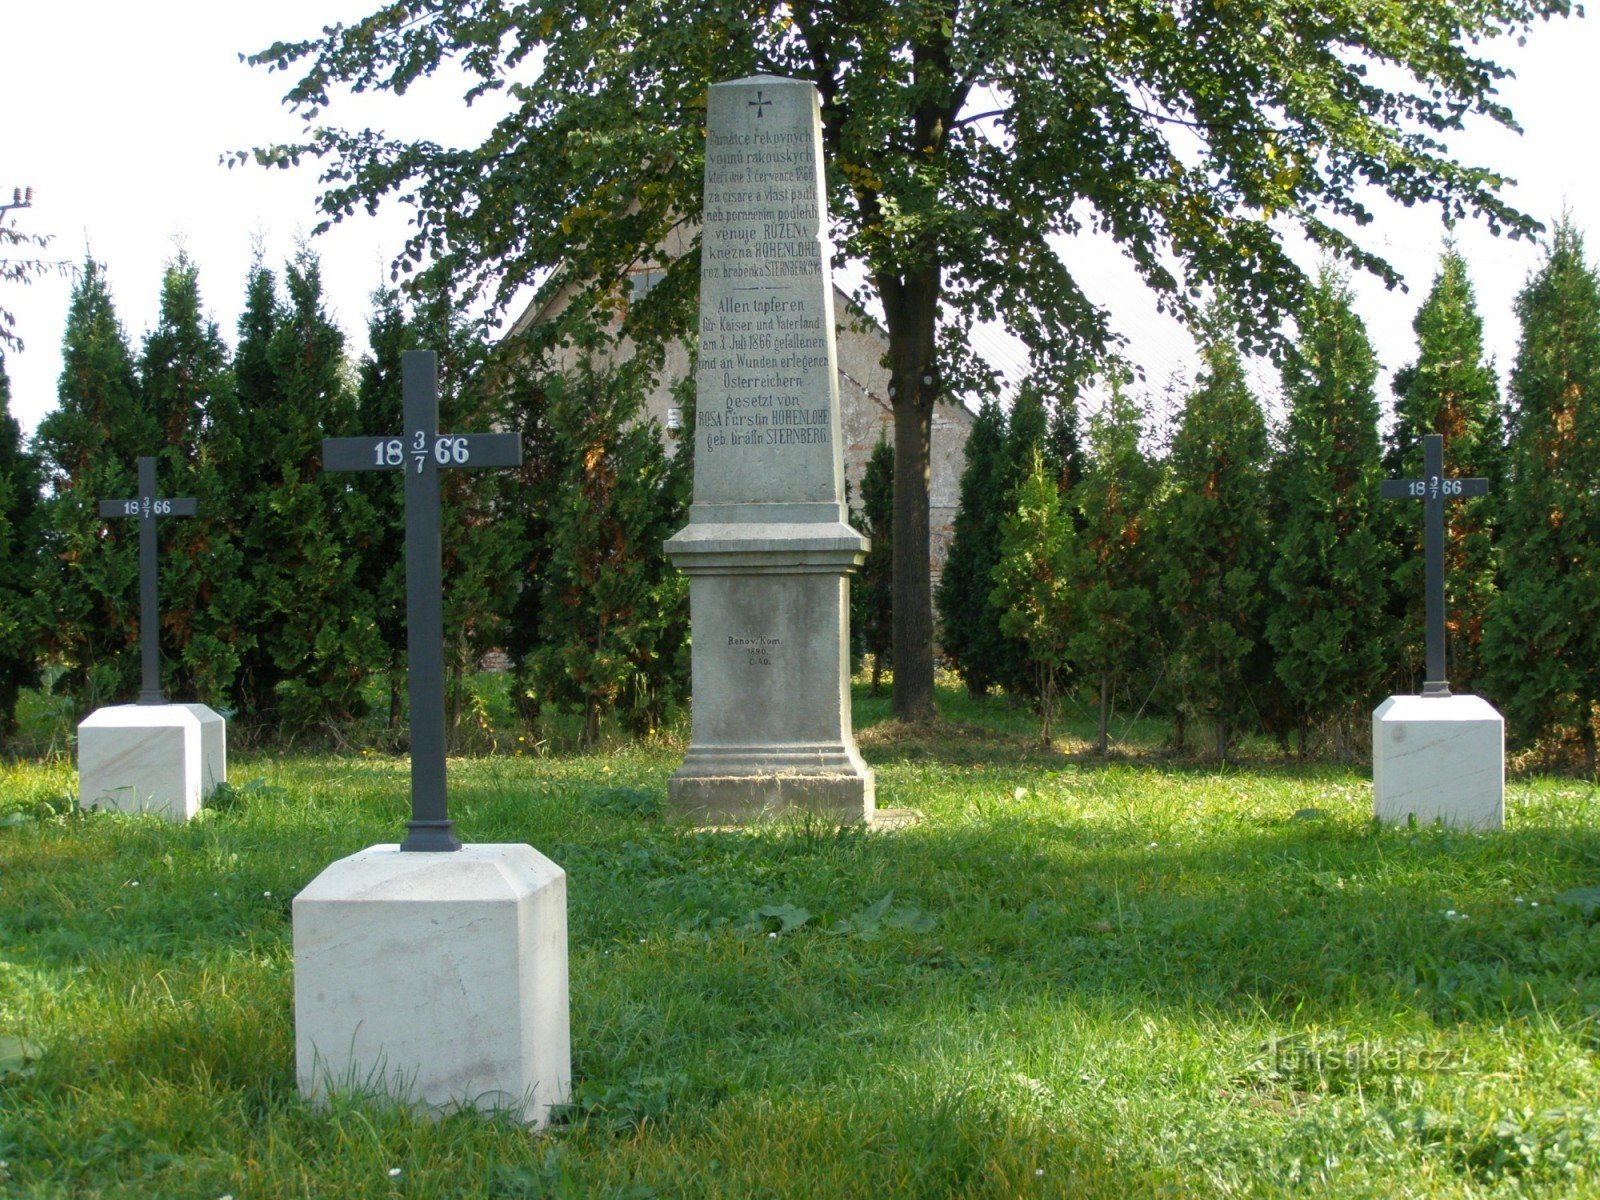 Nedelíště - vojno groblje bitke 1866